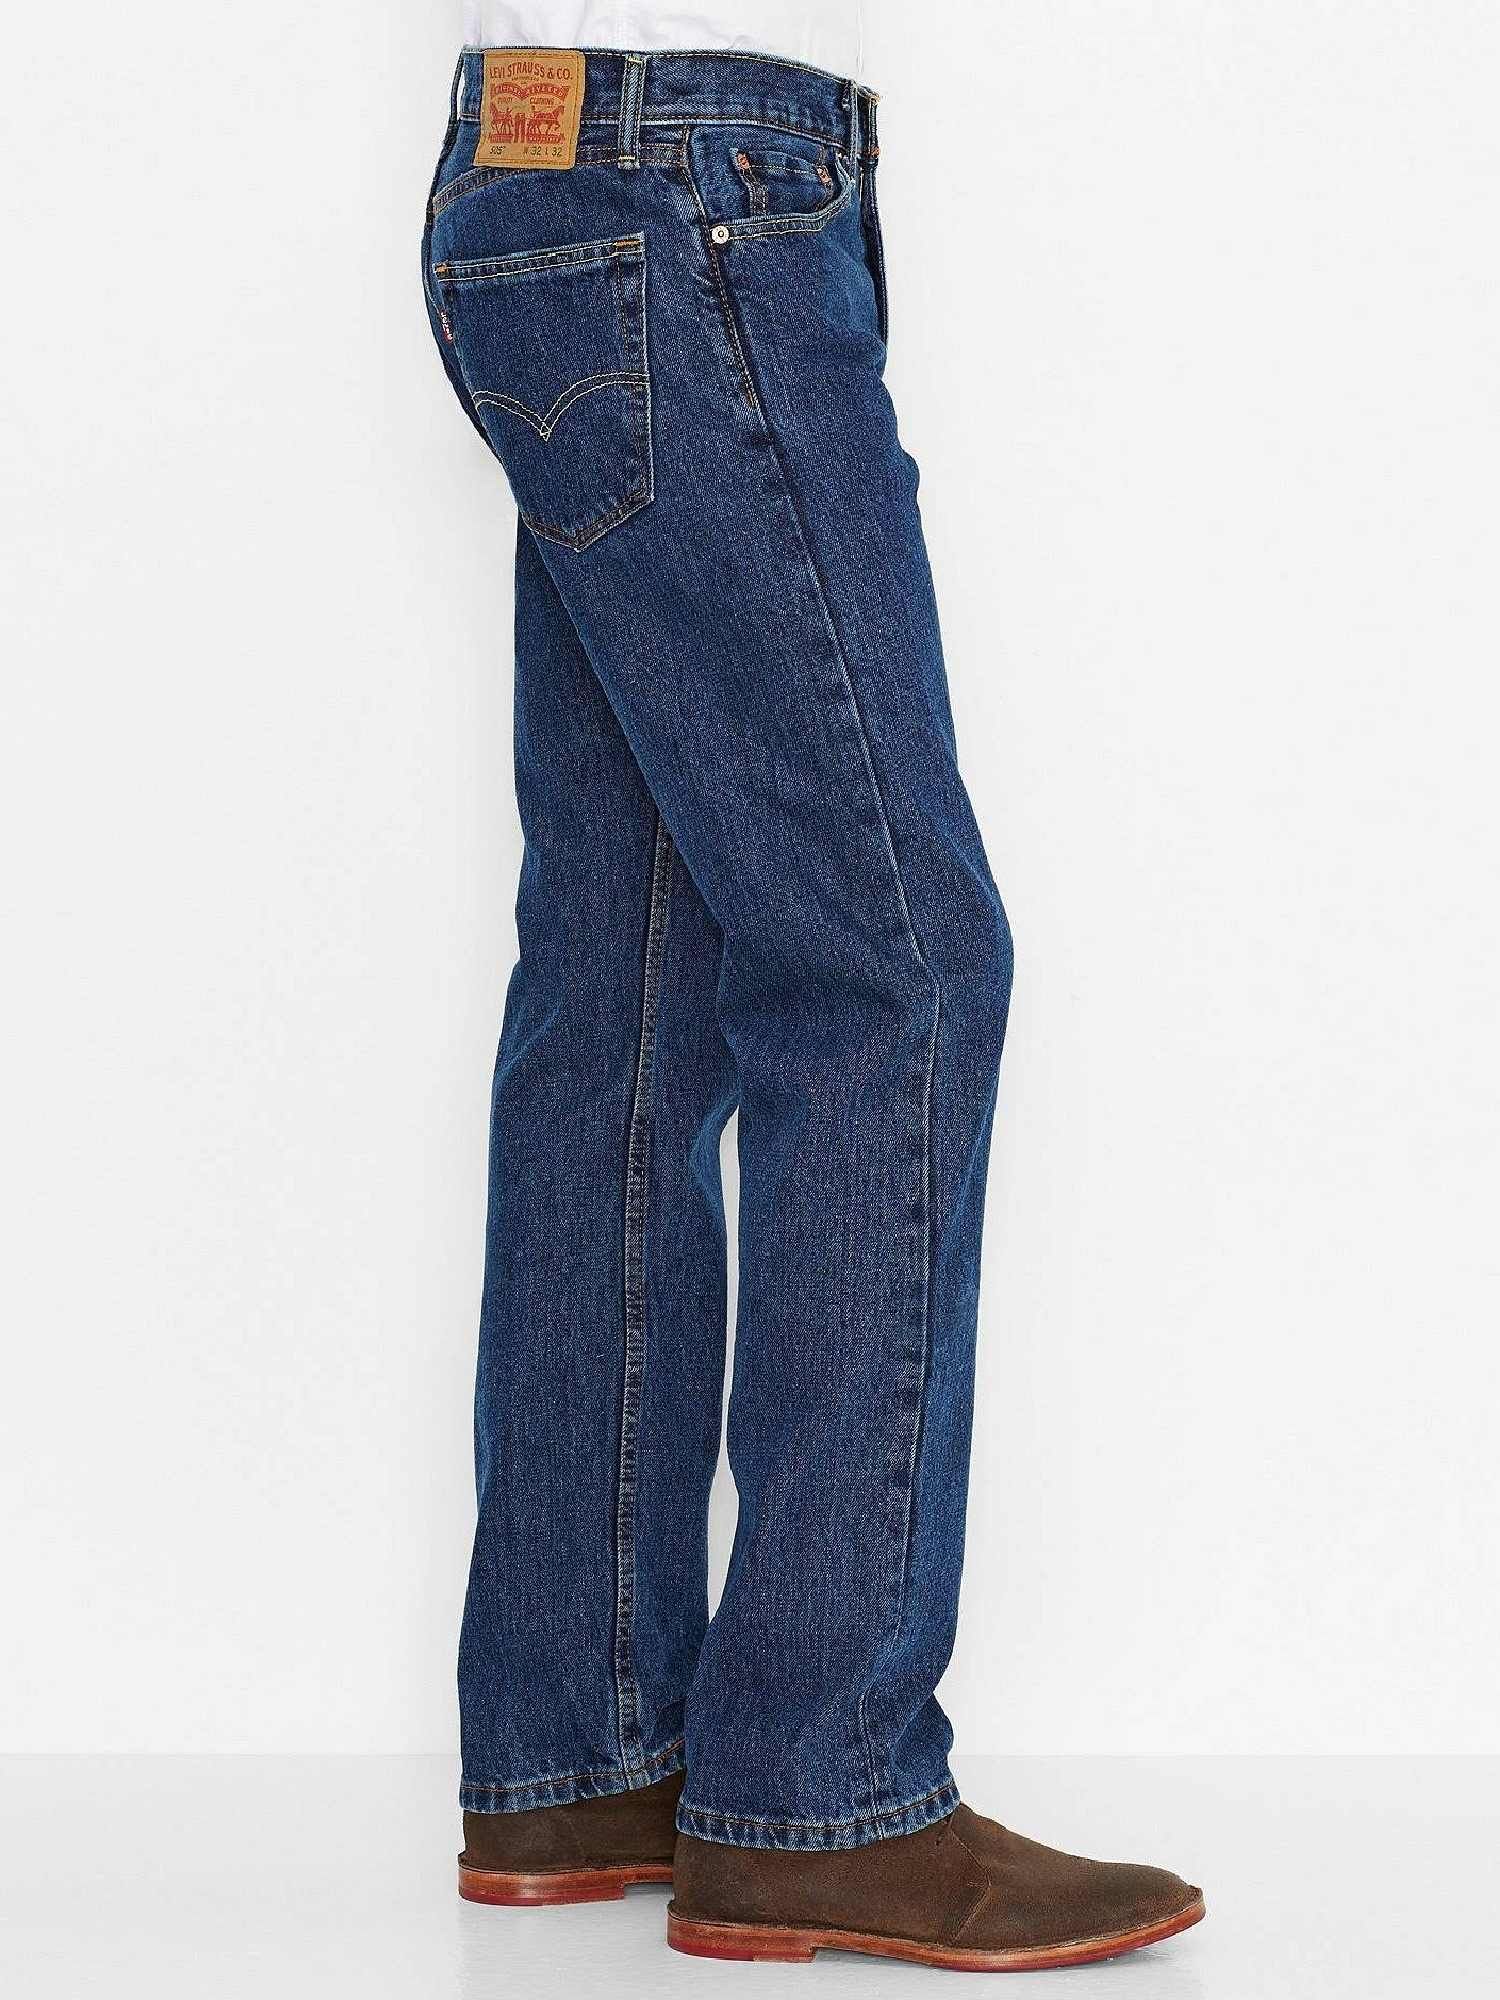 jeans 505 levis